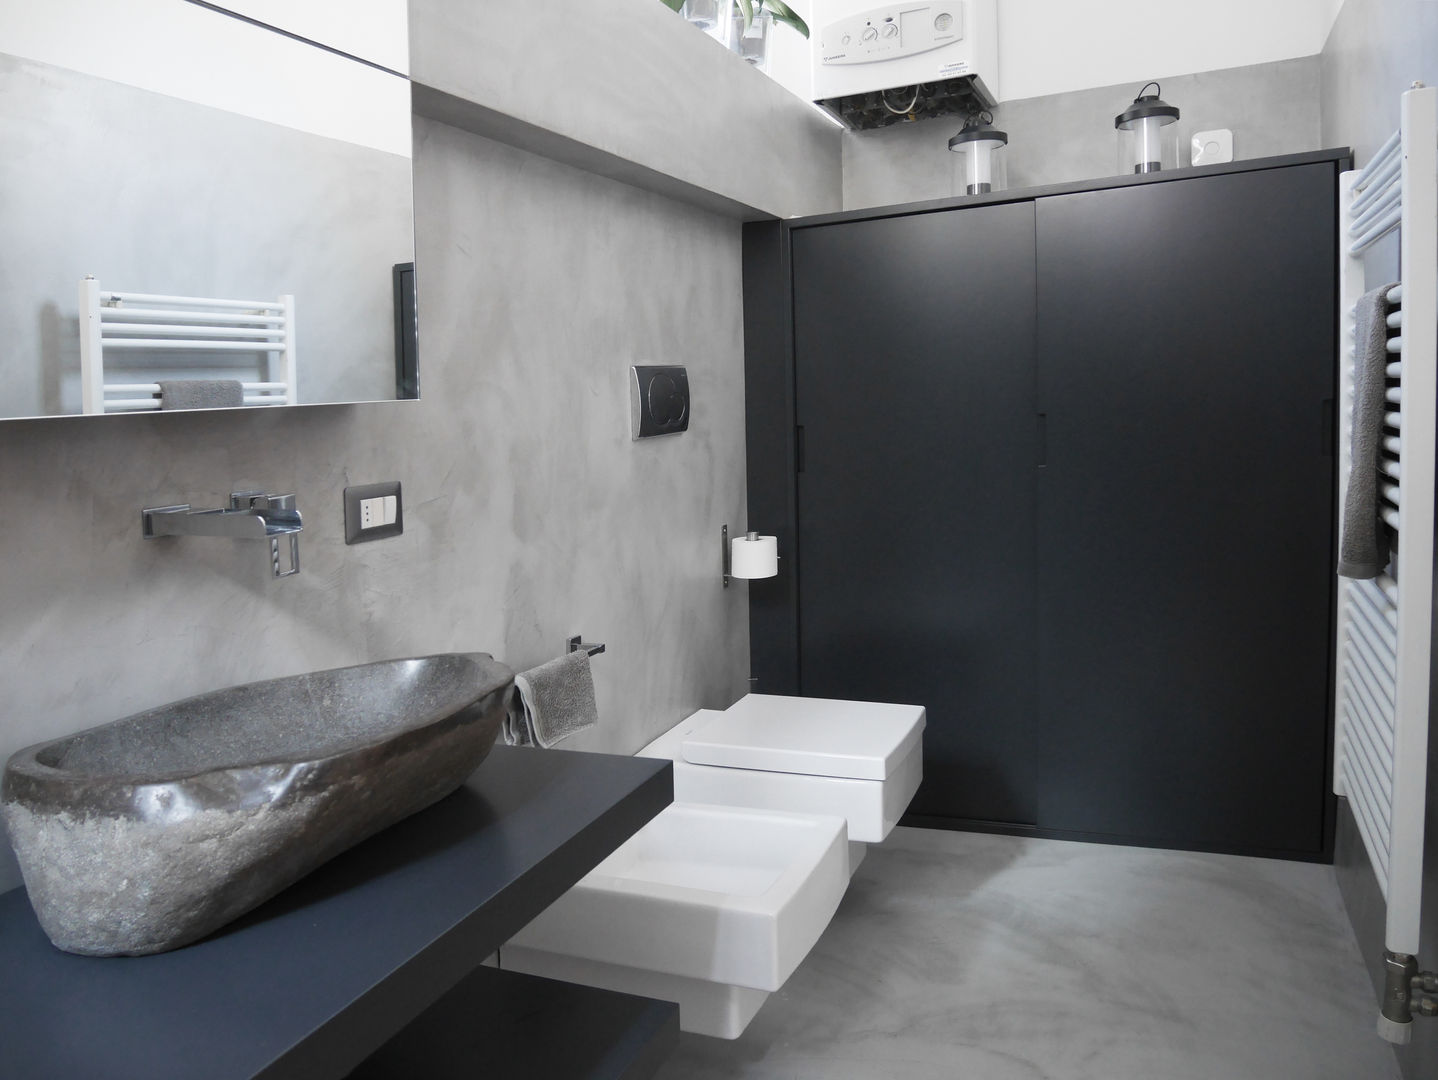 un bagno grigio, studio di progettazione architetto caterina martini studio di progettazione architetto caterina martini ห้องน้ำ